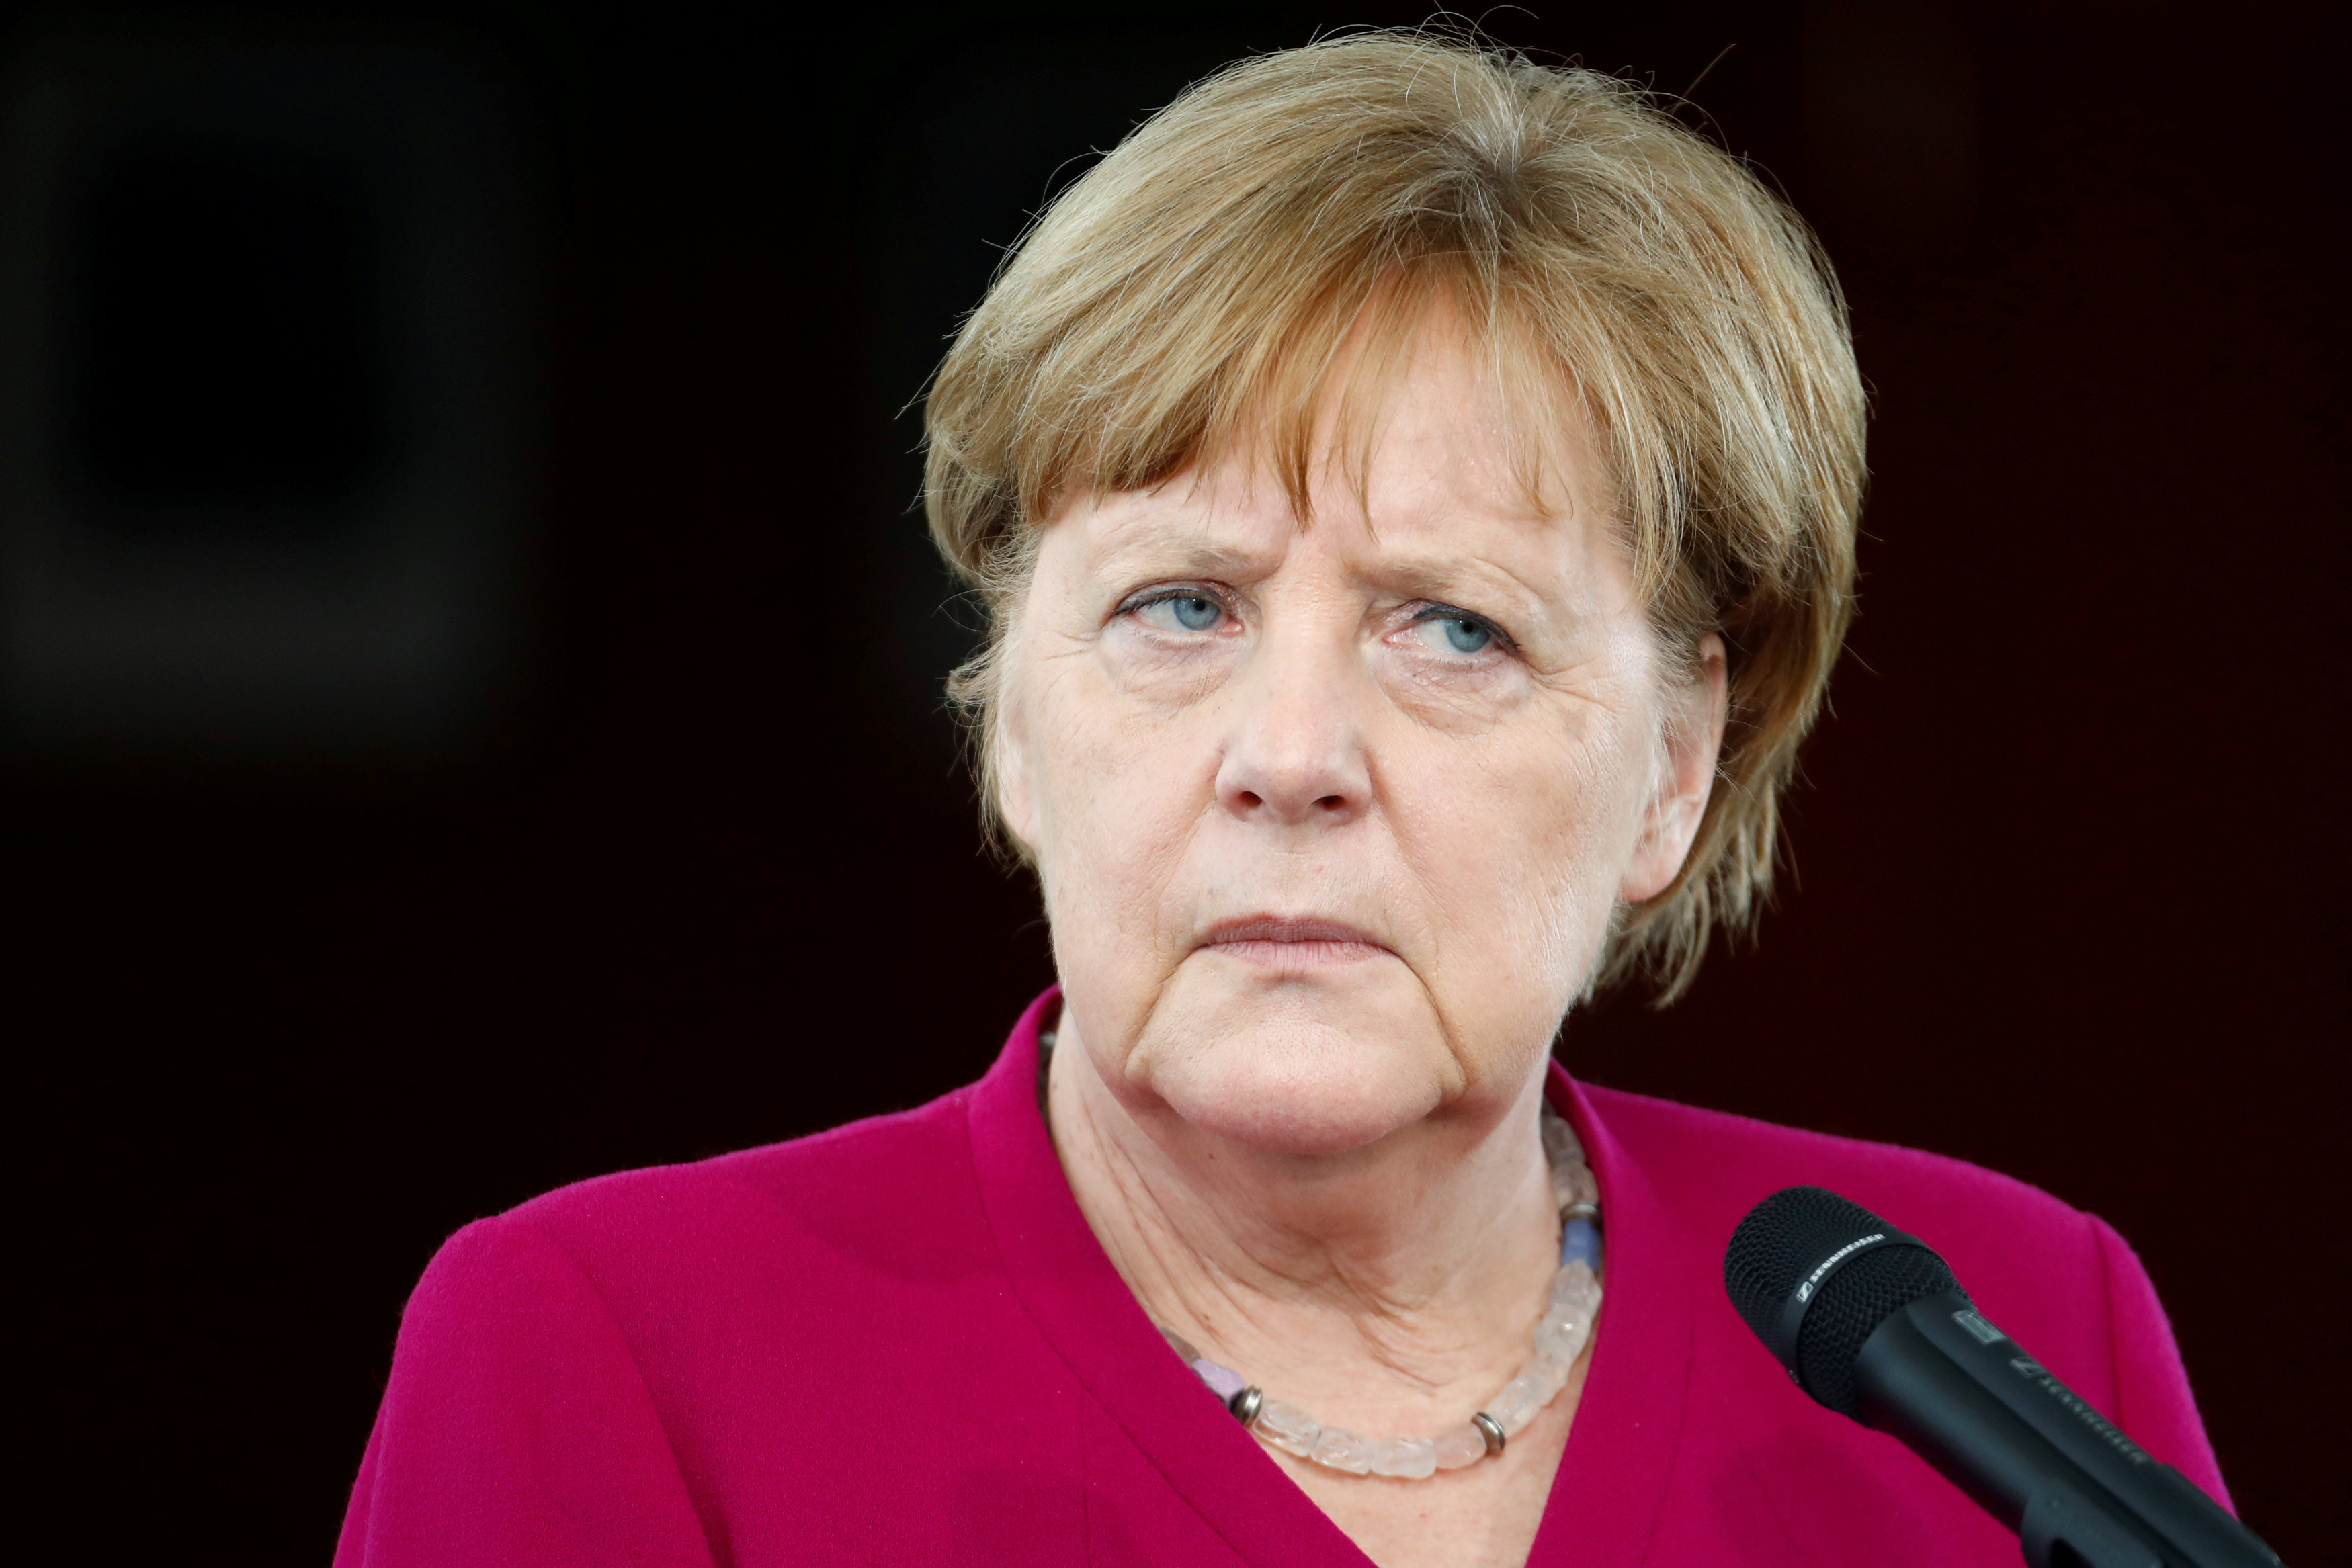 Merkel defiende una estrategia más flexible y una solución regional a la crisis migratoria.